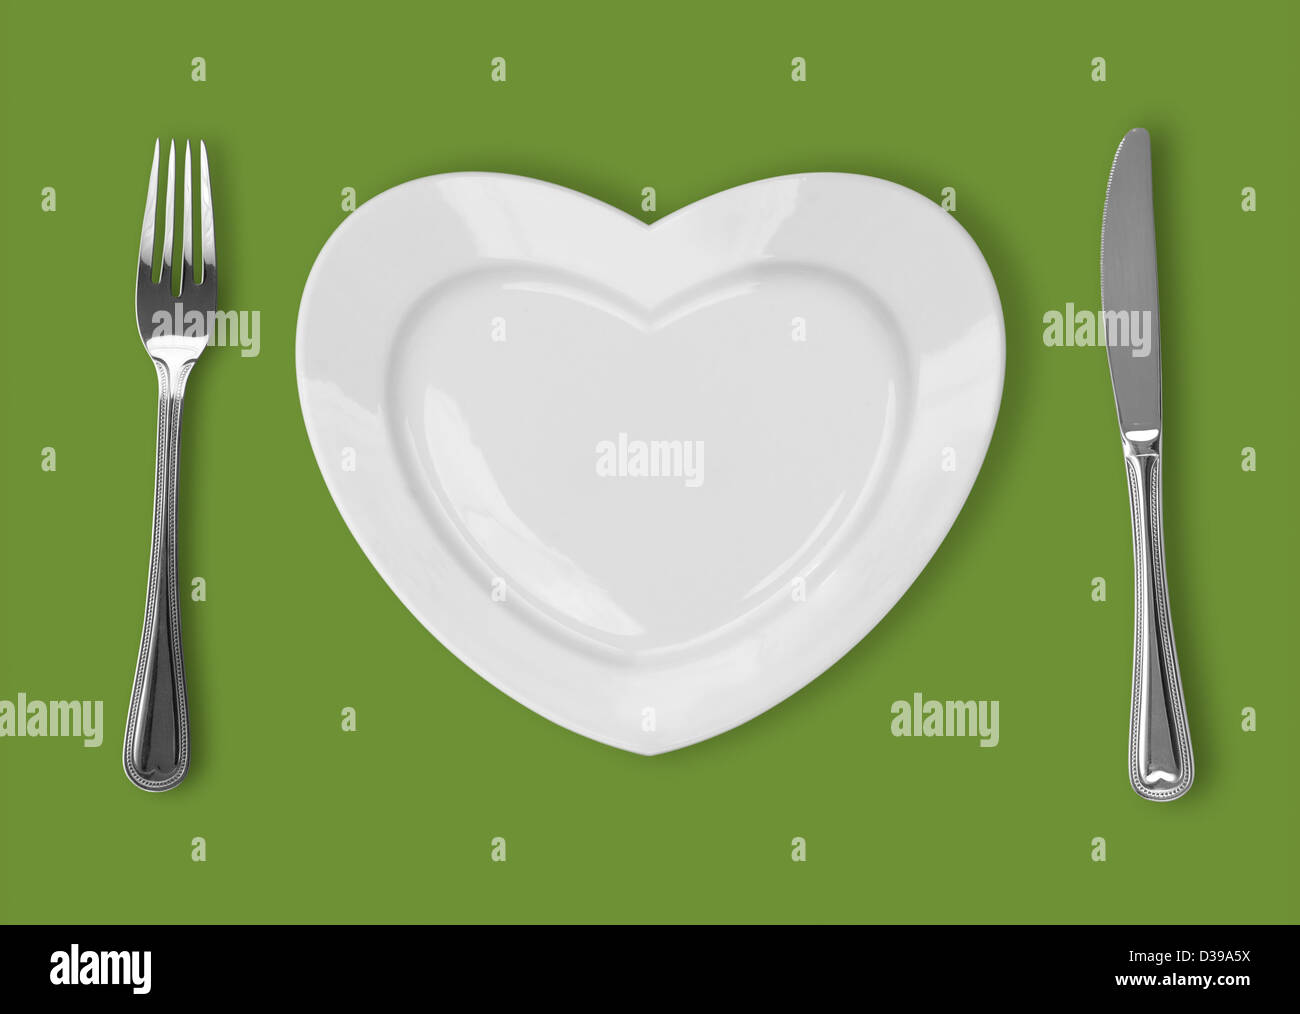 Piastra in forma di cuore, tavola coltello e forchetta su sfondo verde Foto Stock